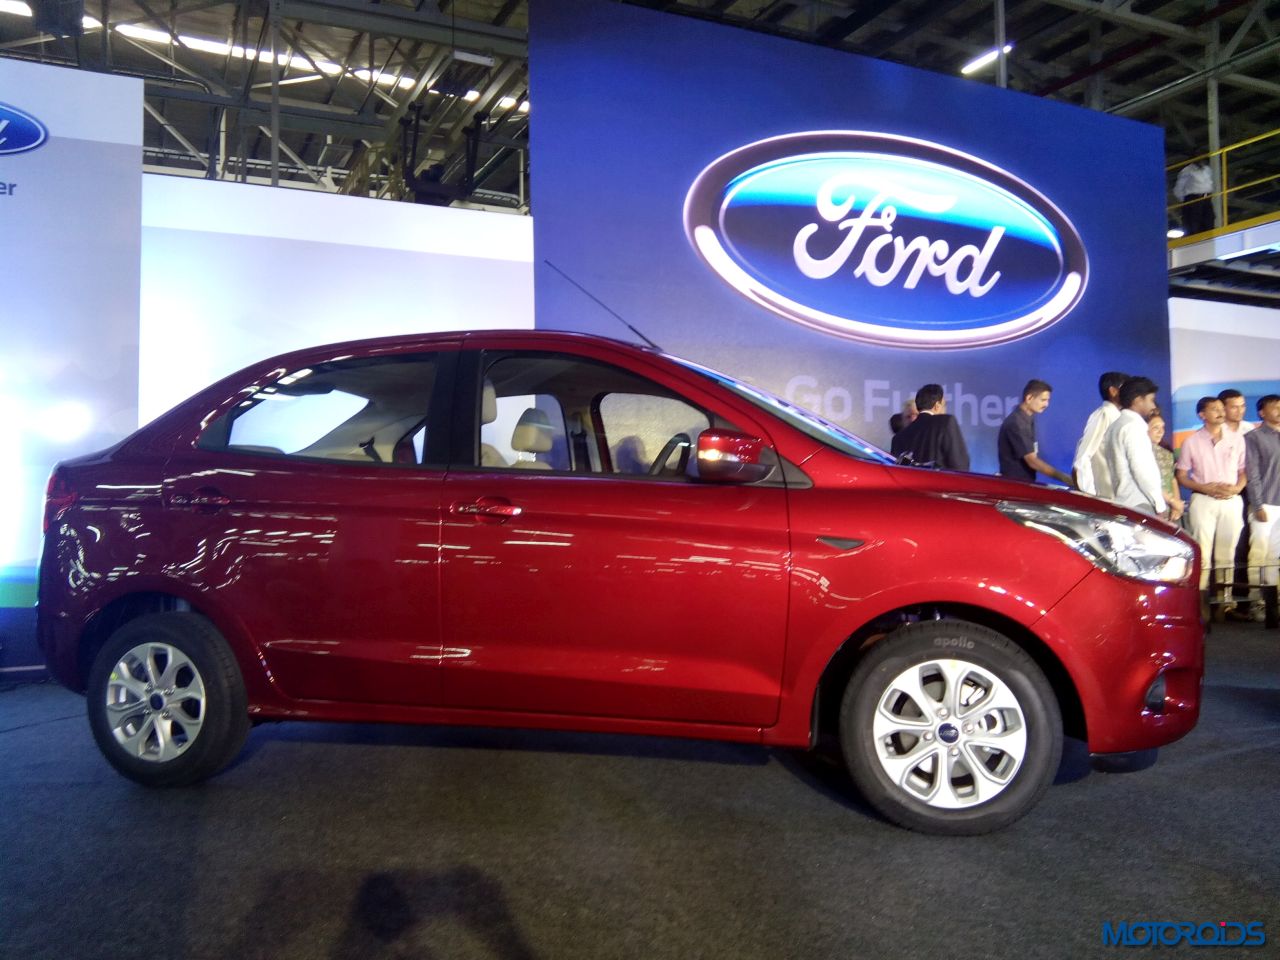 Ford figo india #3